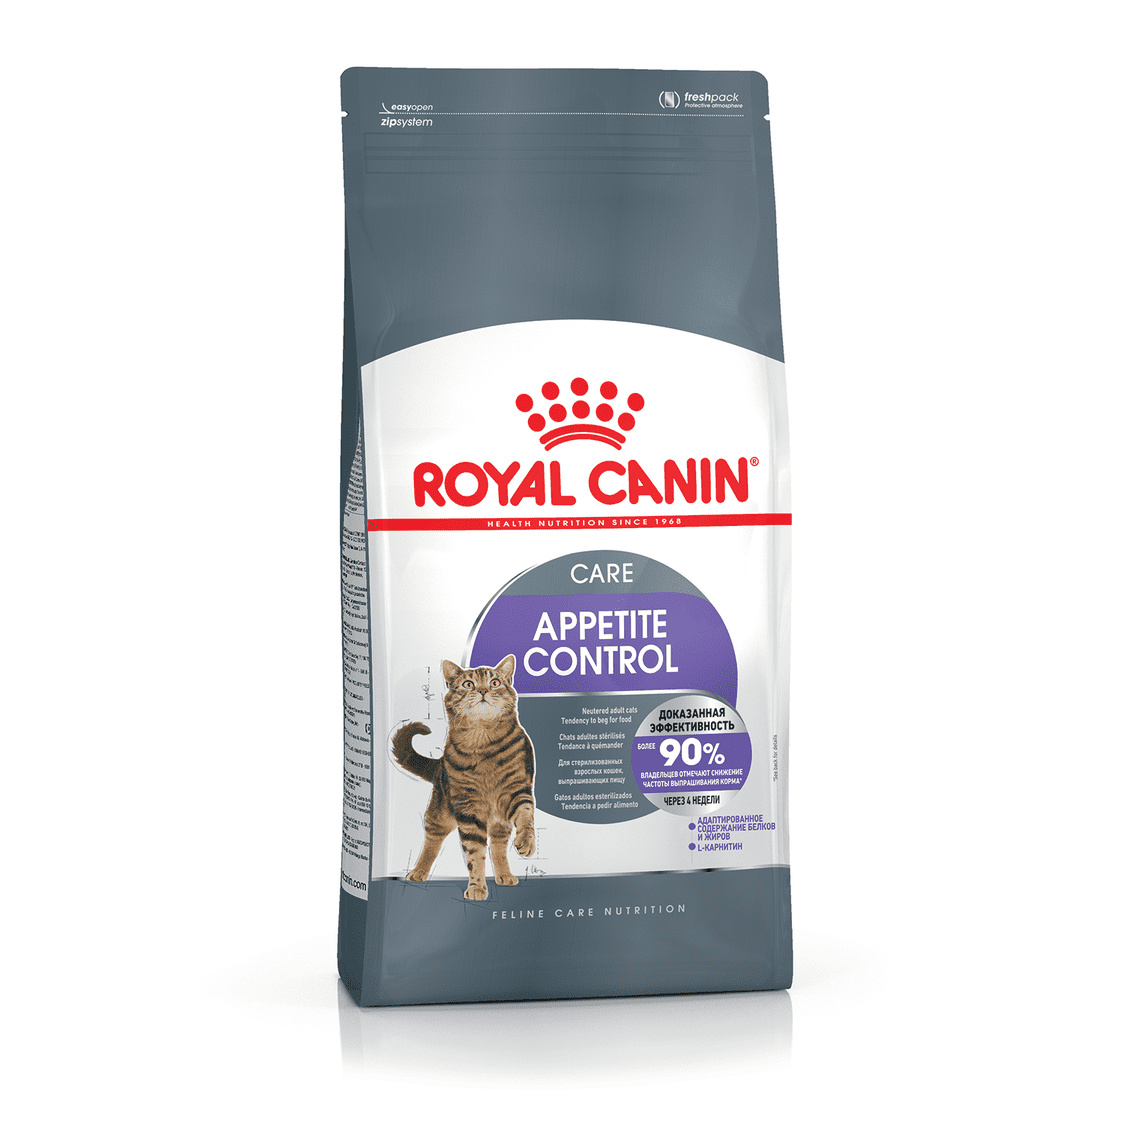 Royal Canin Корм Royal Canin для взрослых кошек, рекомендуется для контроля выпрашивания корма (400 г)